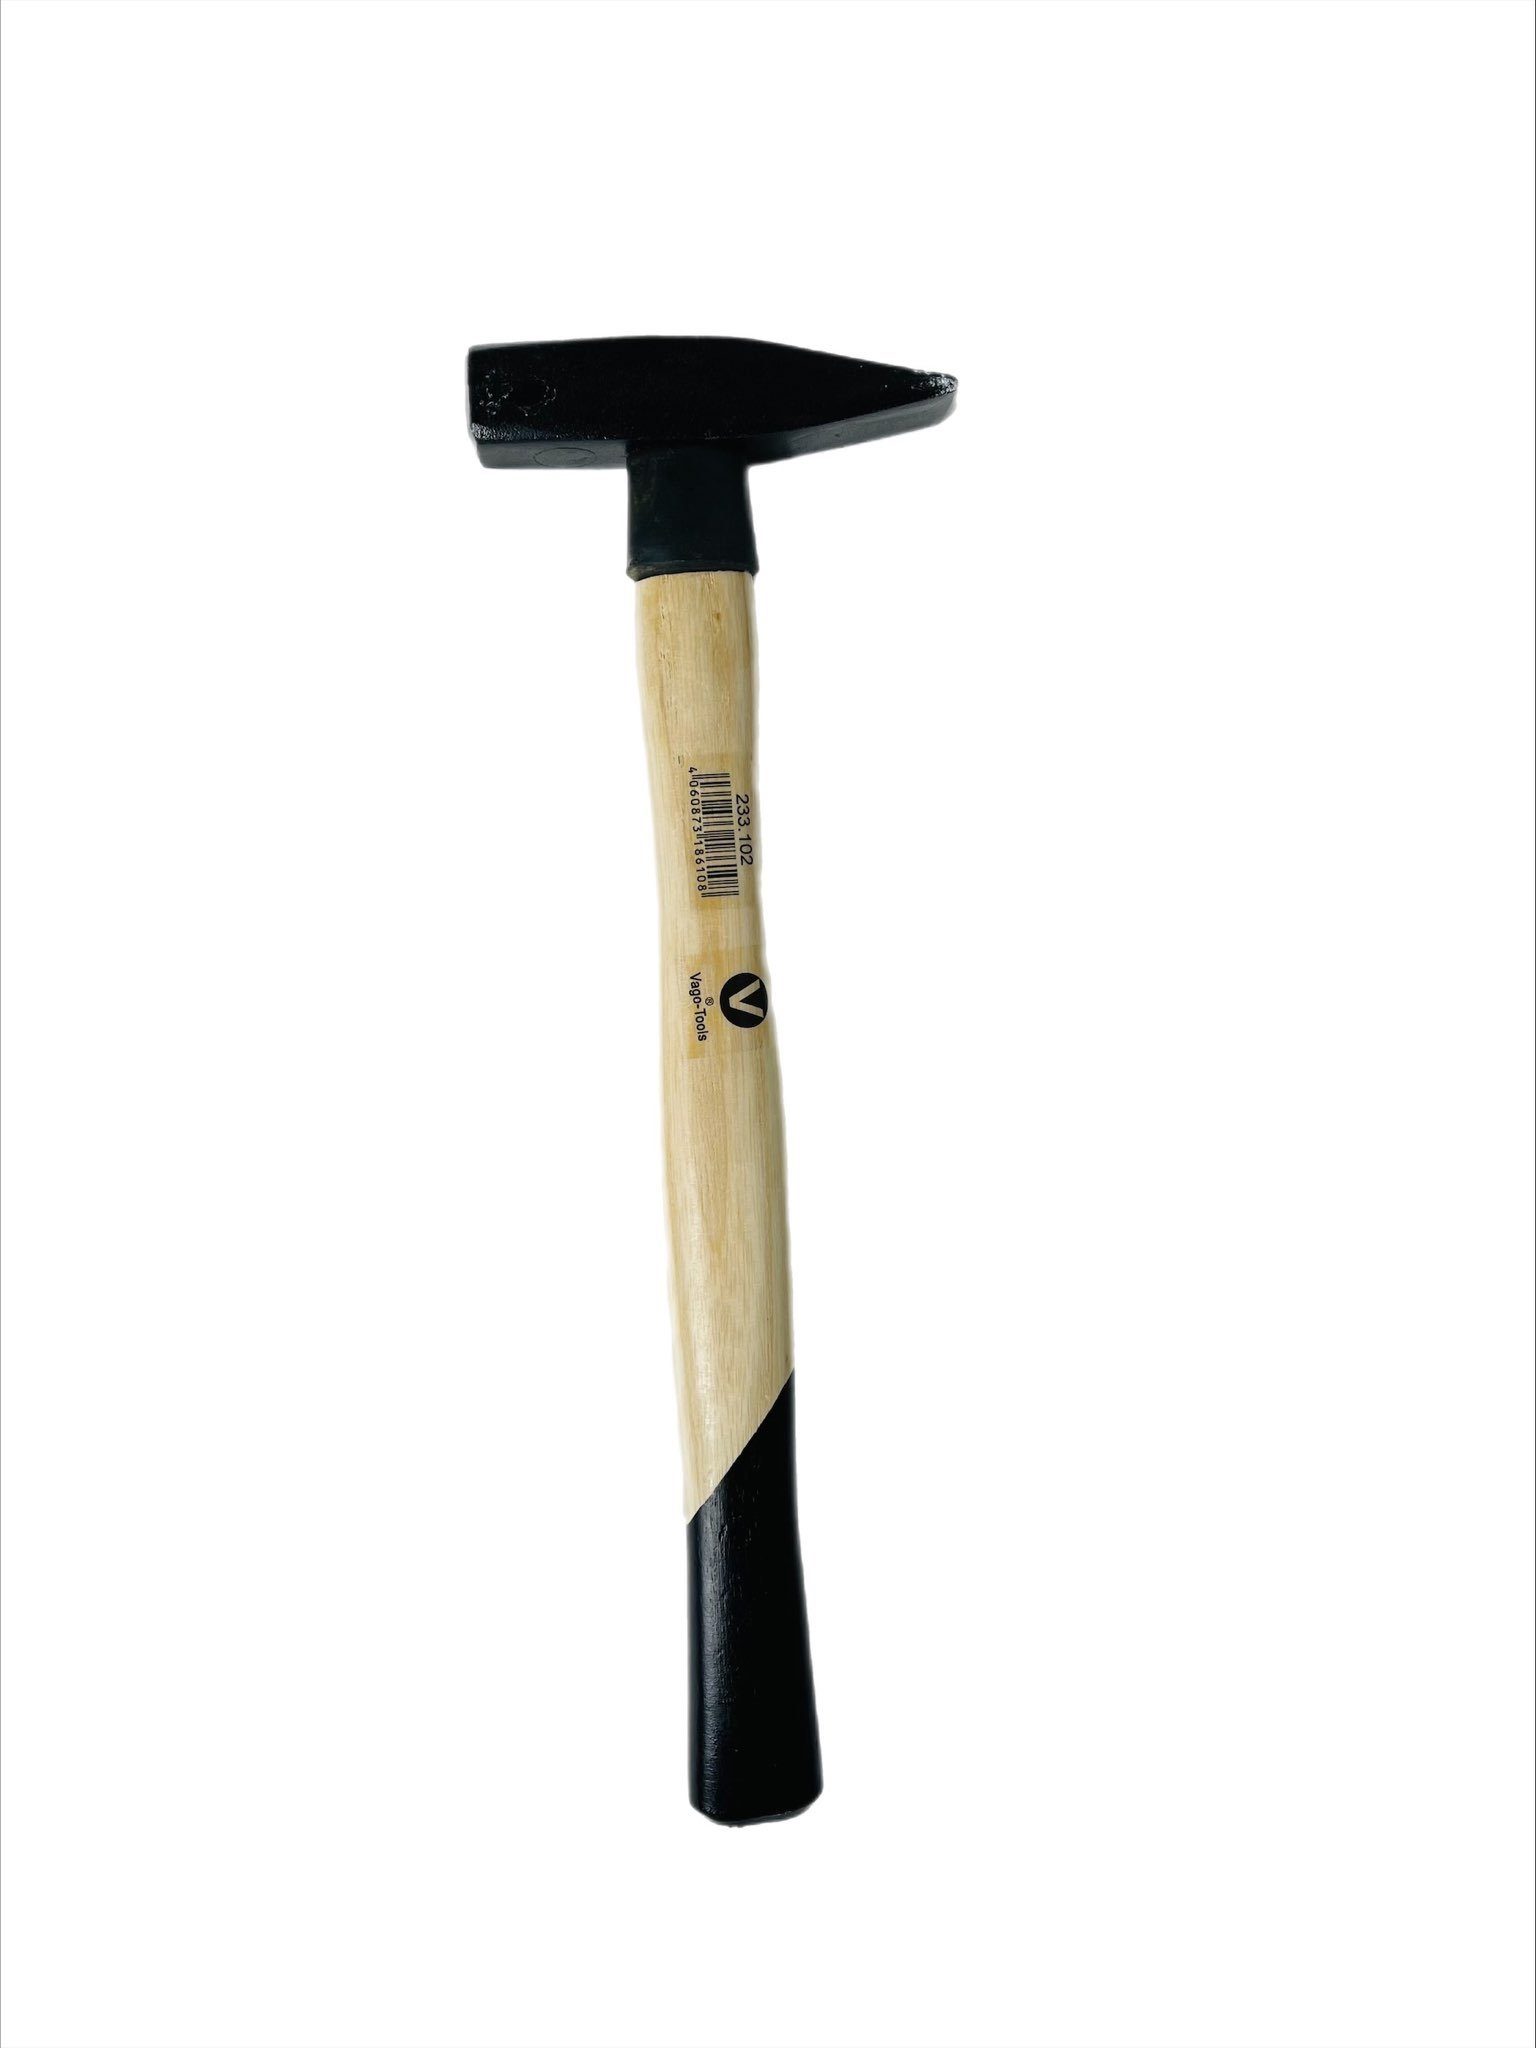 VaGo-Tools Hammer Hammer Set 100/200/300/800g 4tlg Schlosserhammer